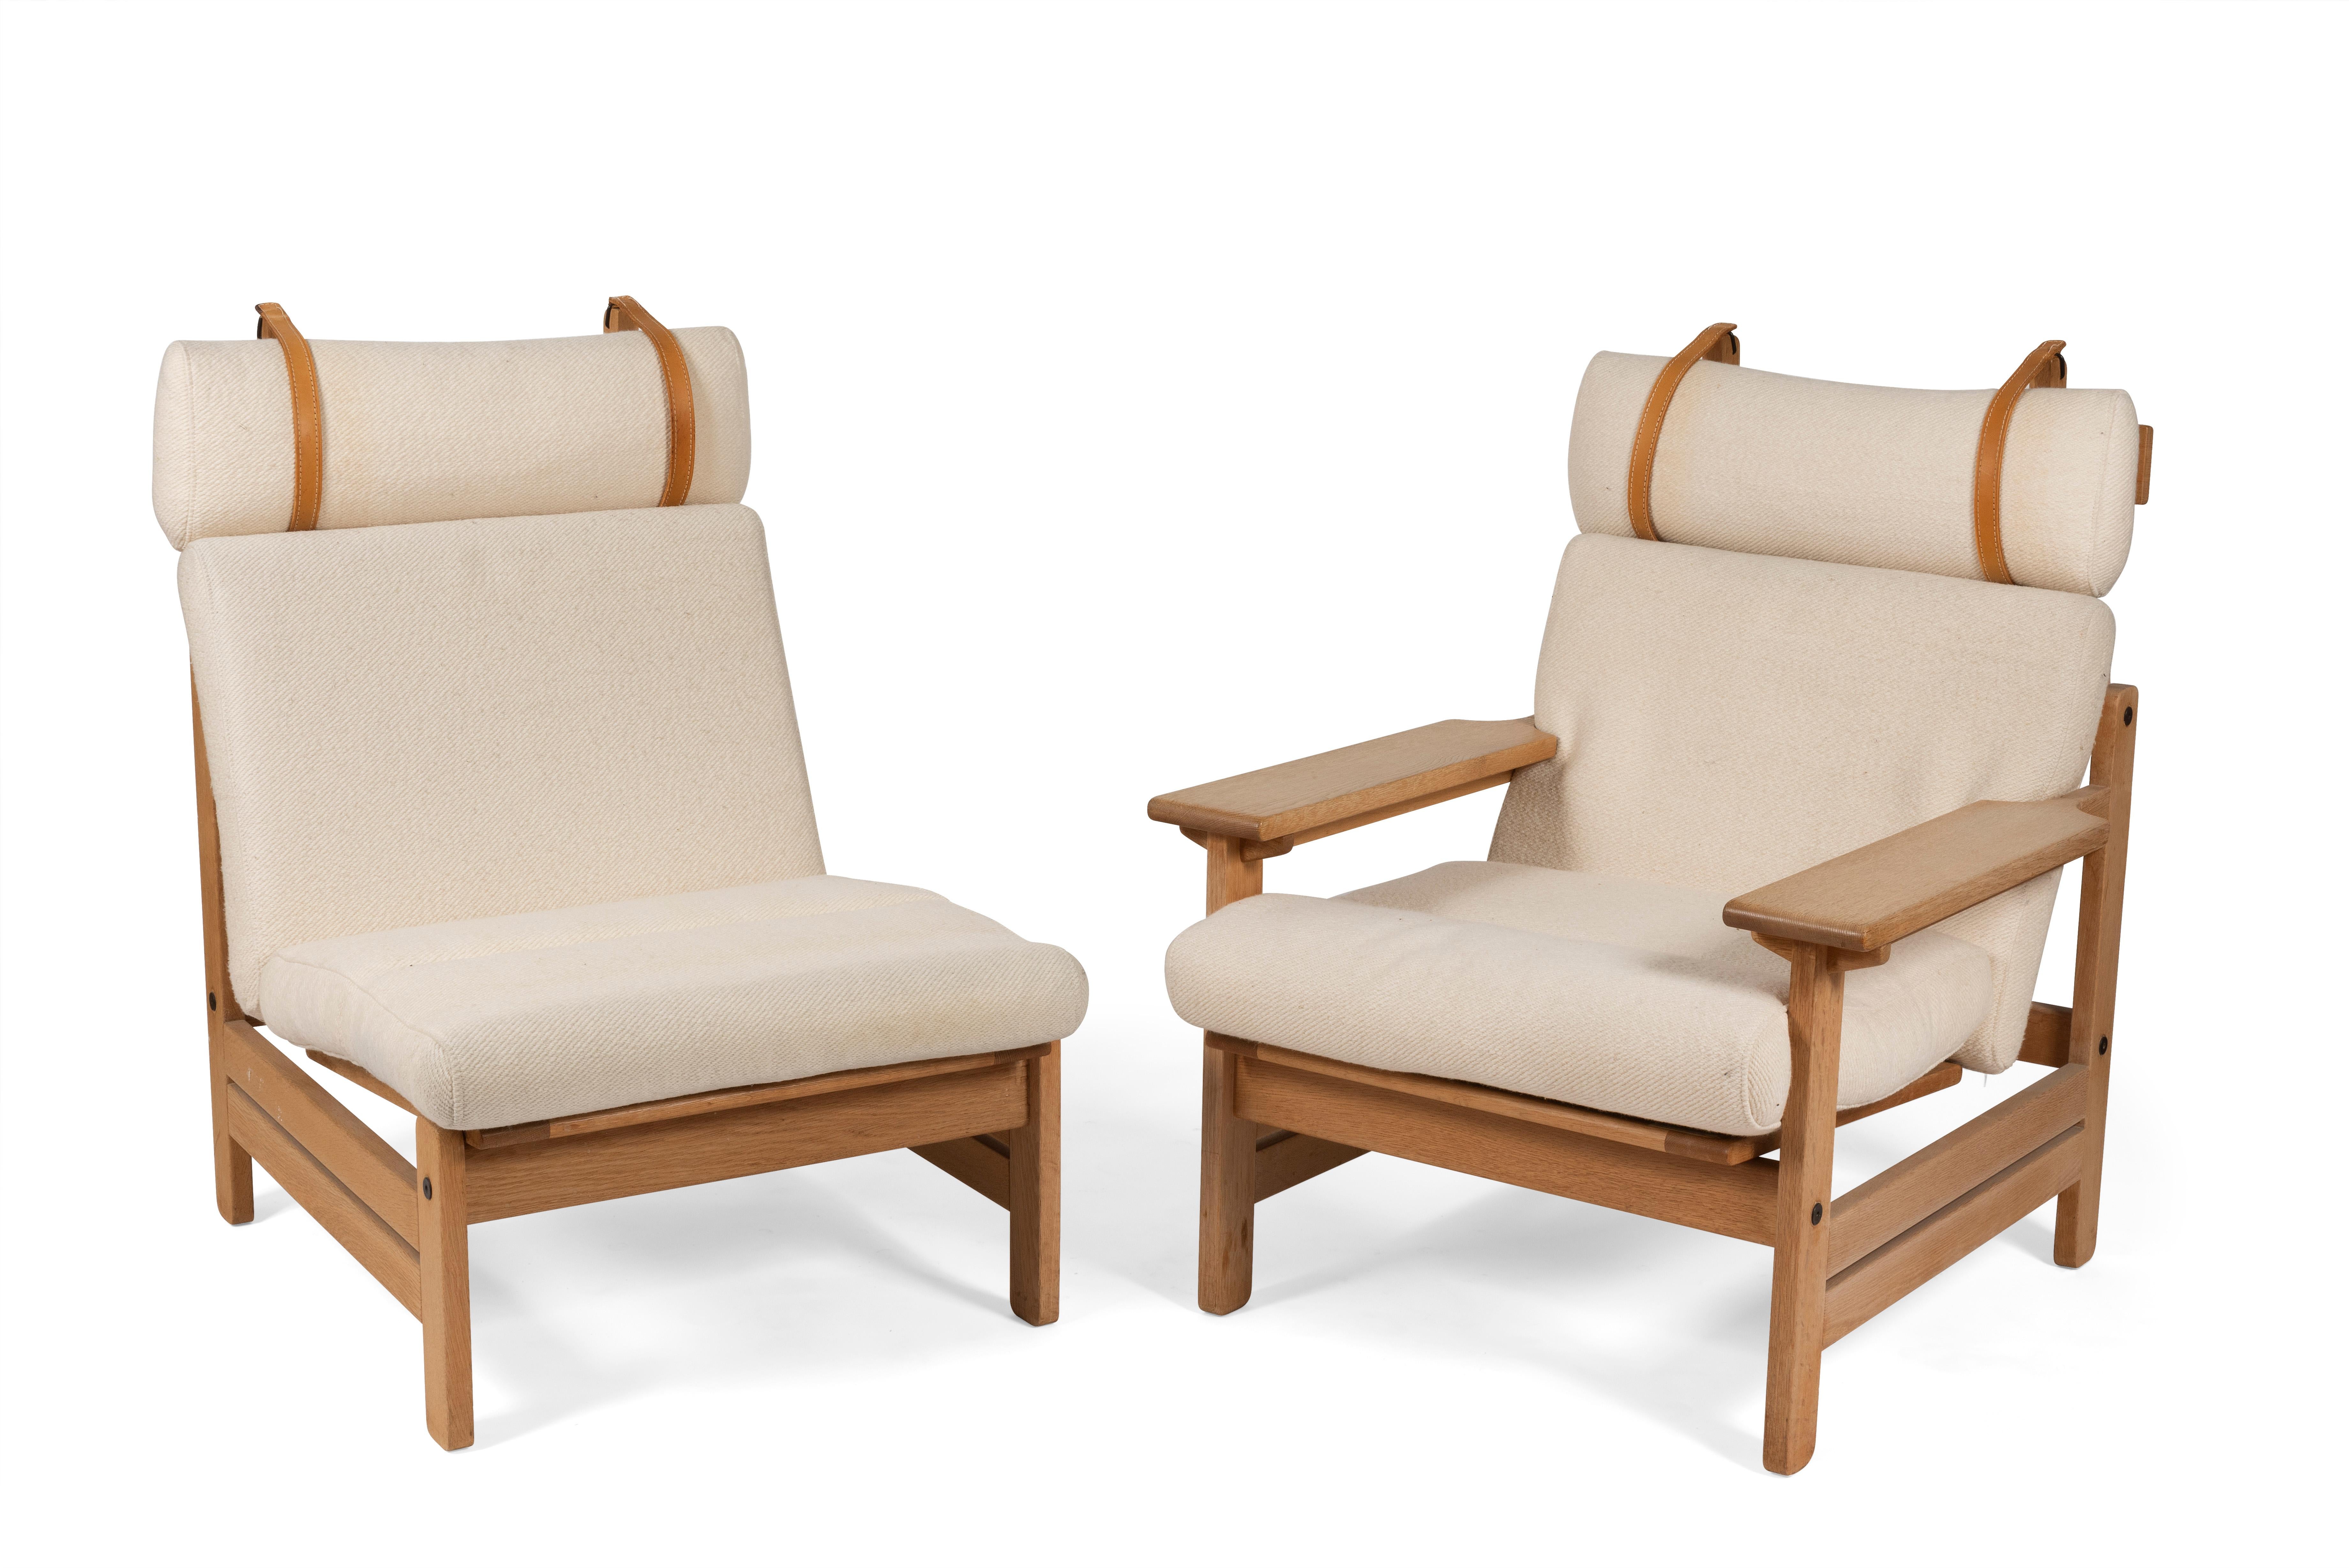 Fauteuil designé par Aksel Dahl et produit par le fabricant danois KP Møbler dans les années 1970.

Ensemble composé de deux fauteuils avec appui-tête dont un avec accoudoirs et de deux fauteuils.

Structure en chêne massif avec des coussins en lin